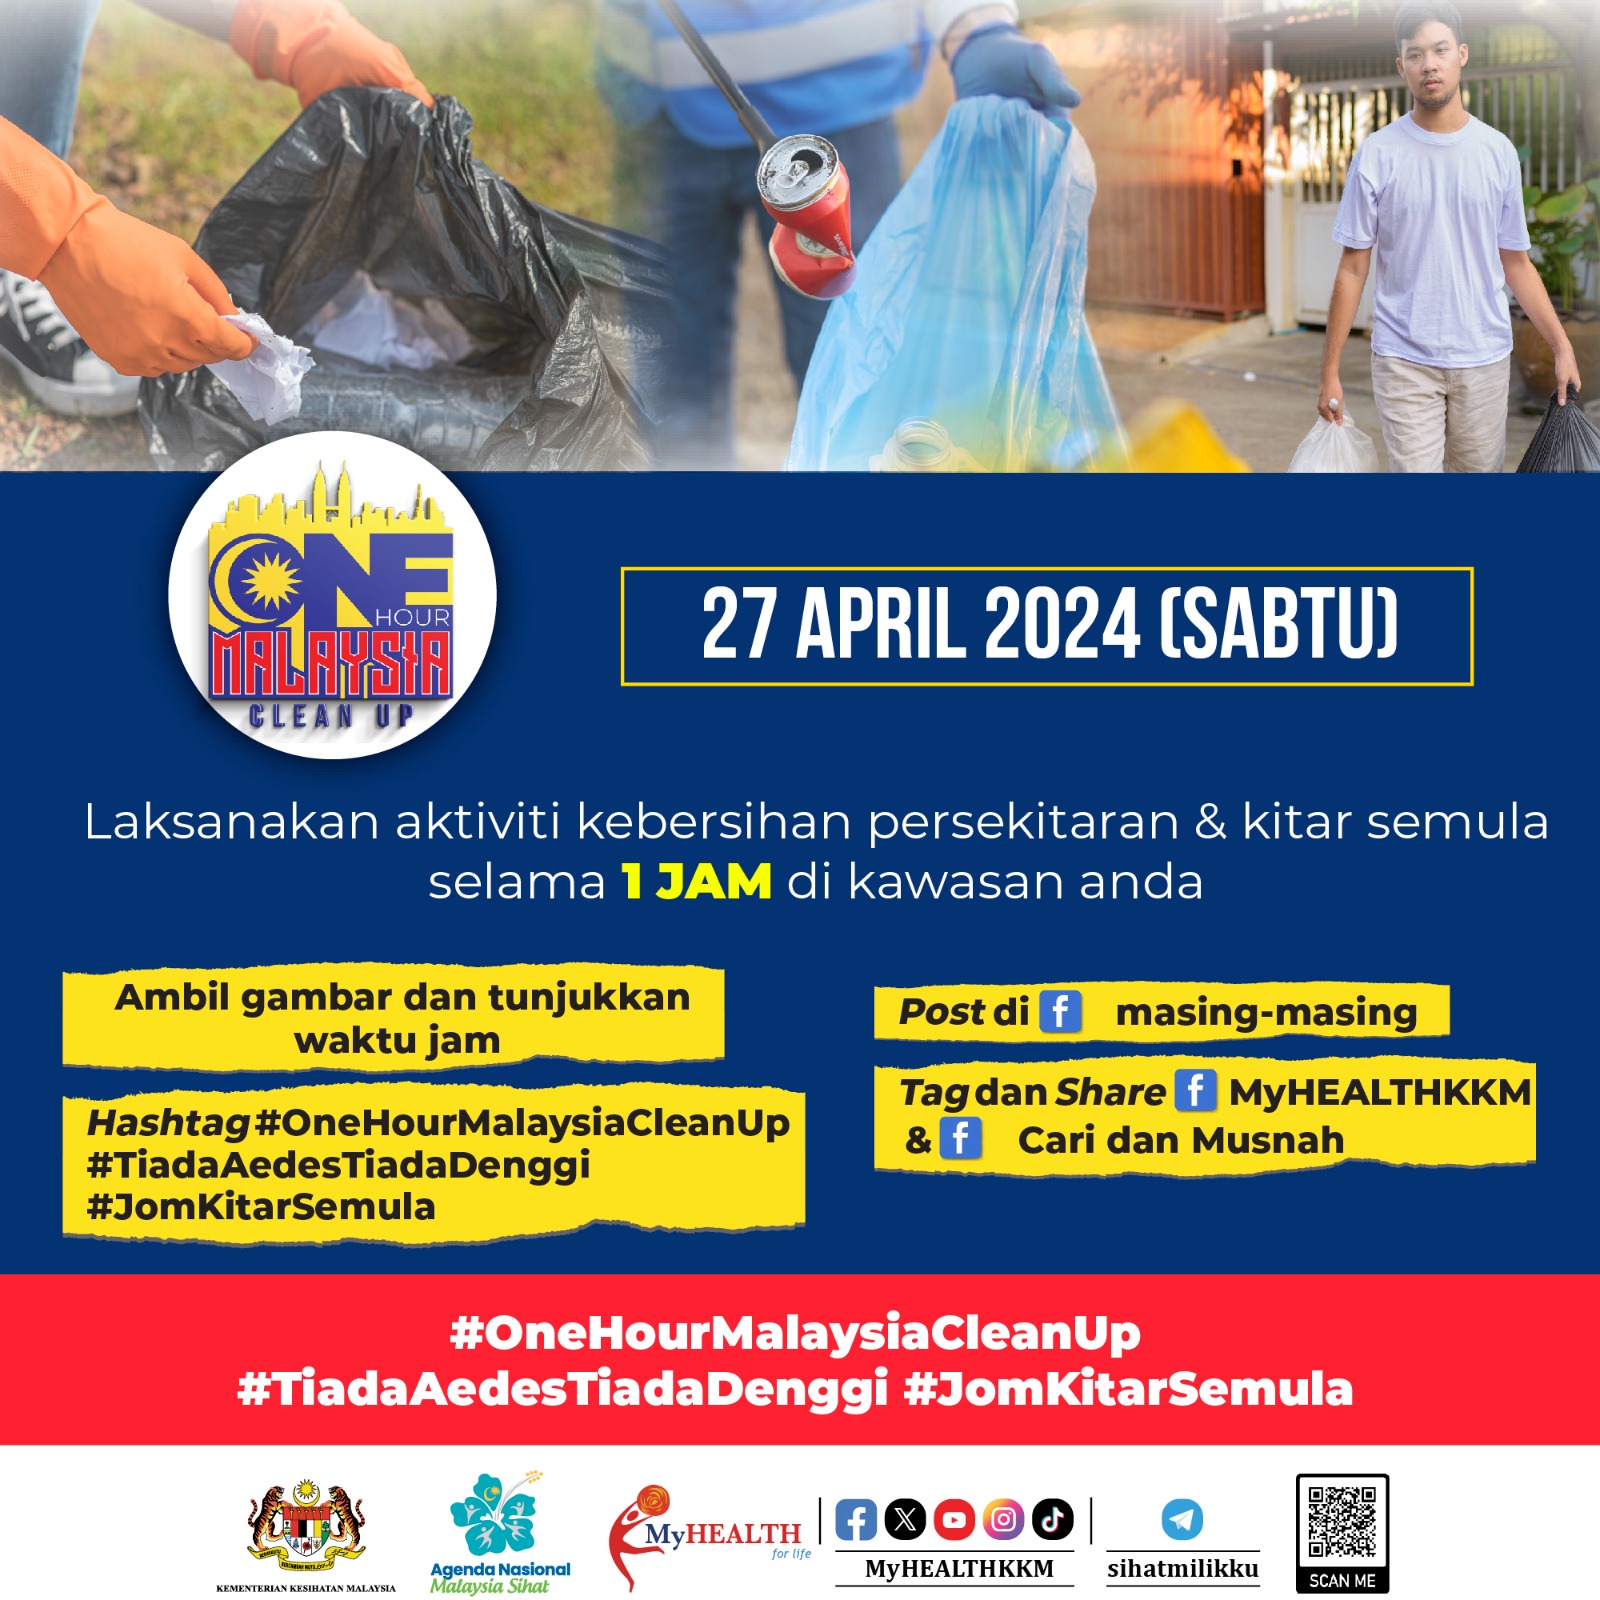 One Hour Malaysia Clean Up: Aktiviti Kebersihan Persekitaran selama 1 Jam